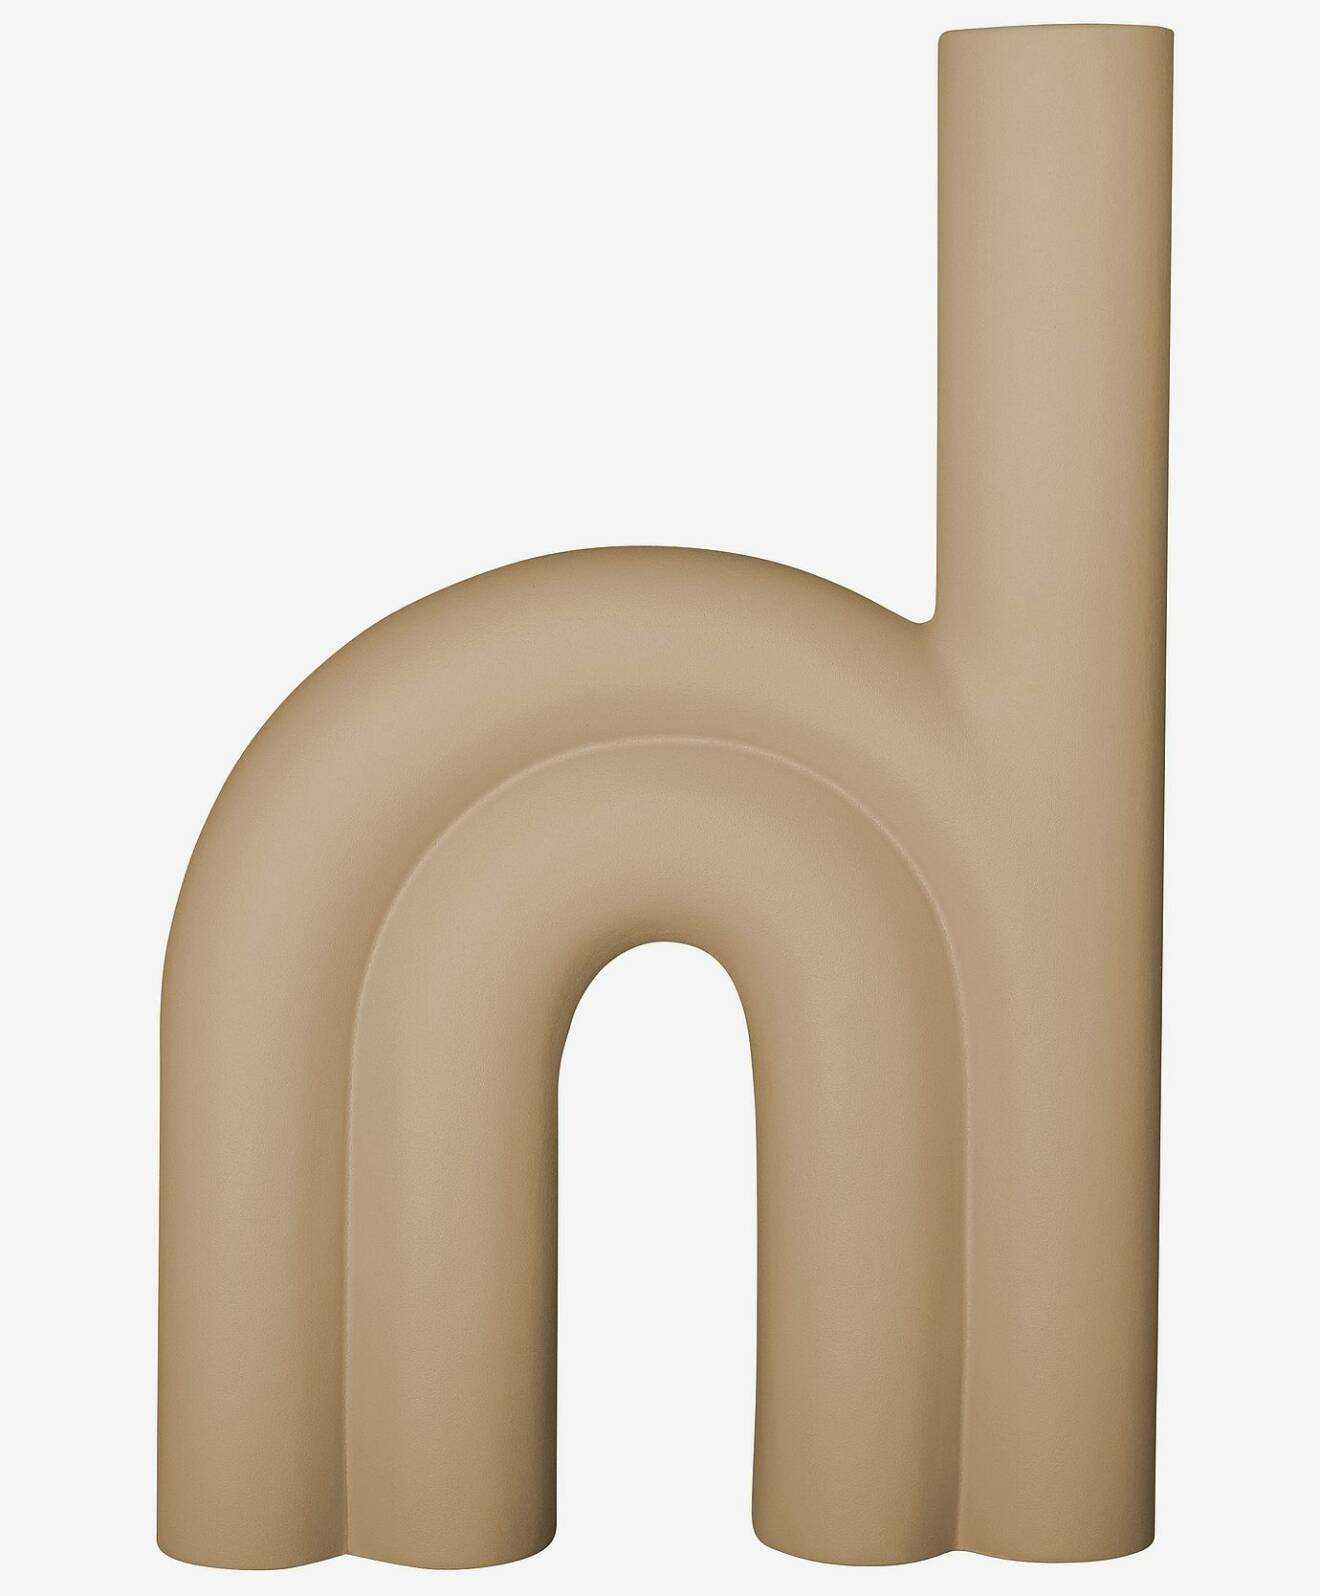 Sandfärgad vas, formad som ett litet h, från DBKD.